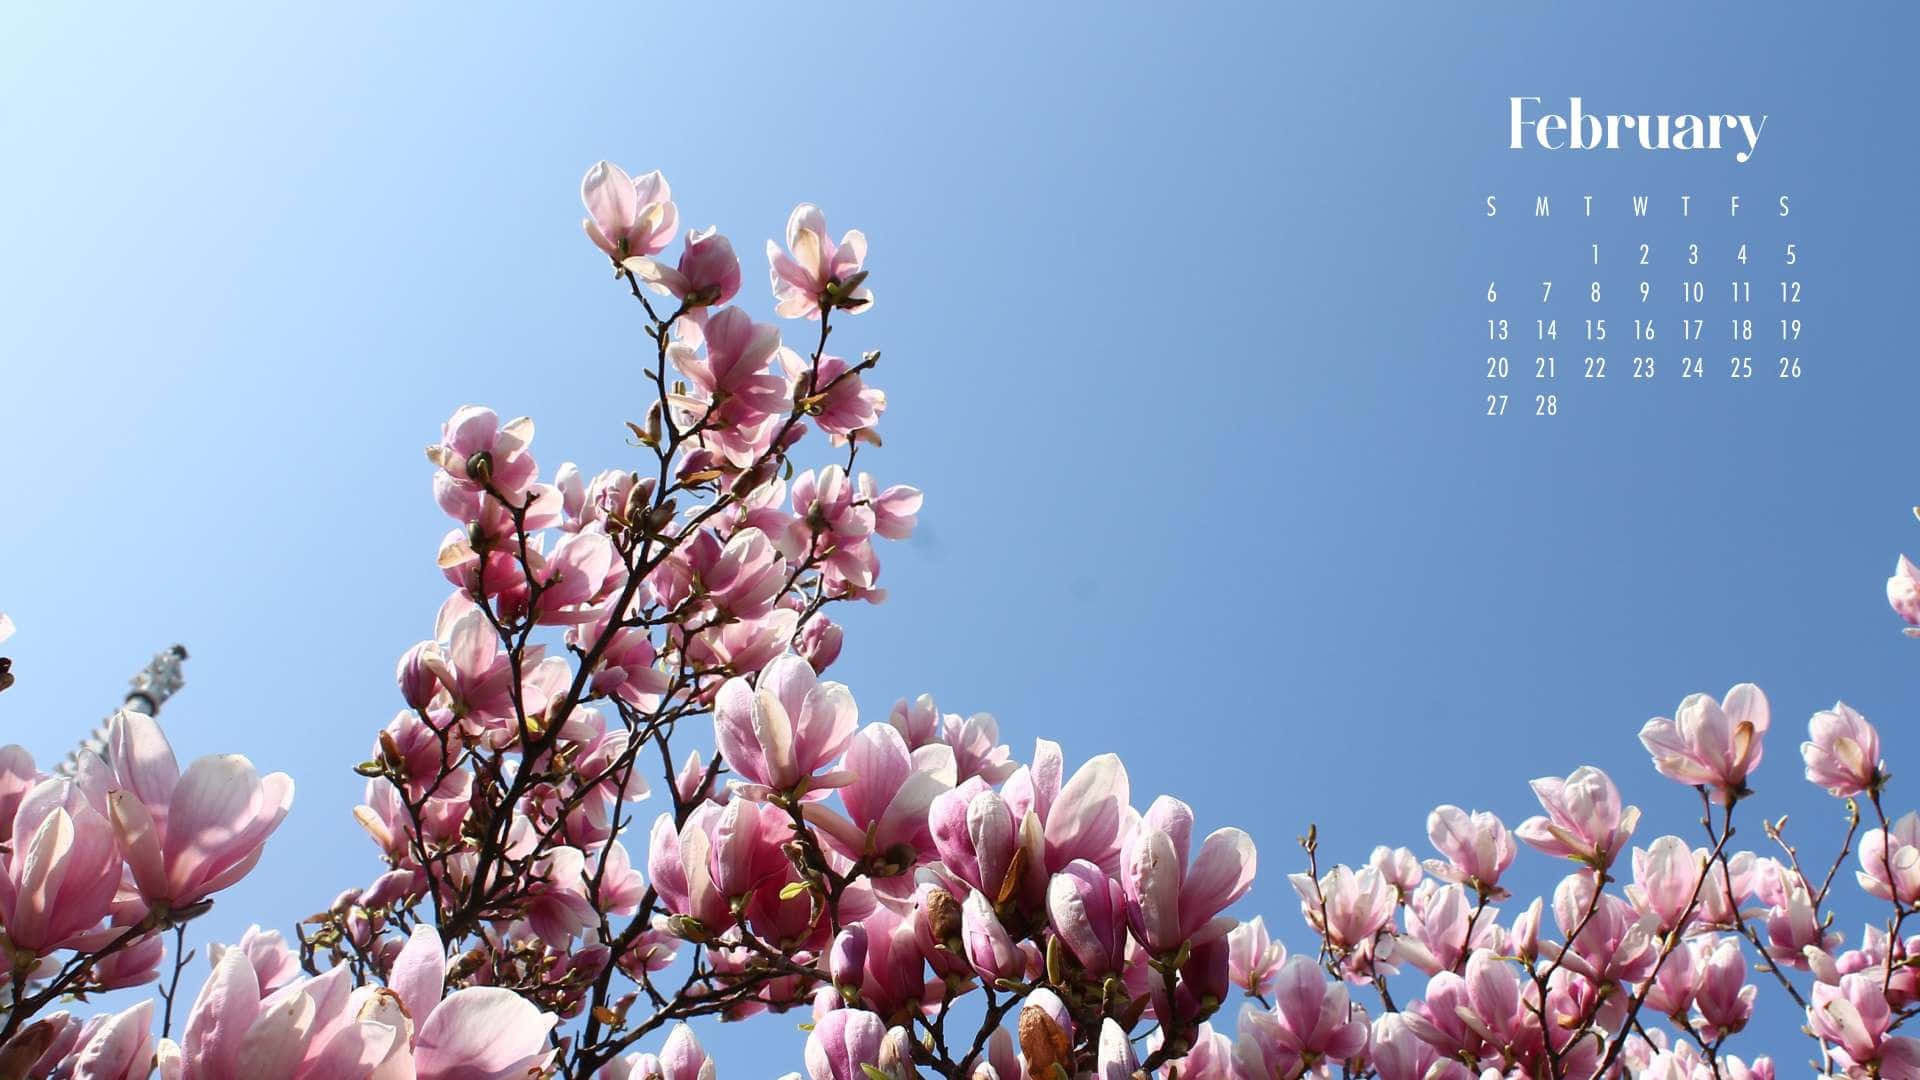 February Magnolia Blossoms Calendar Background Wallpaper